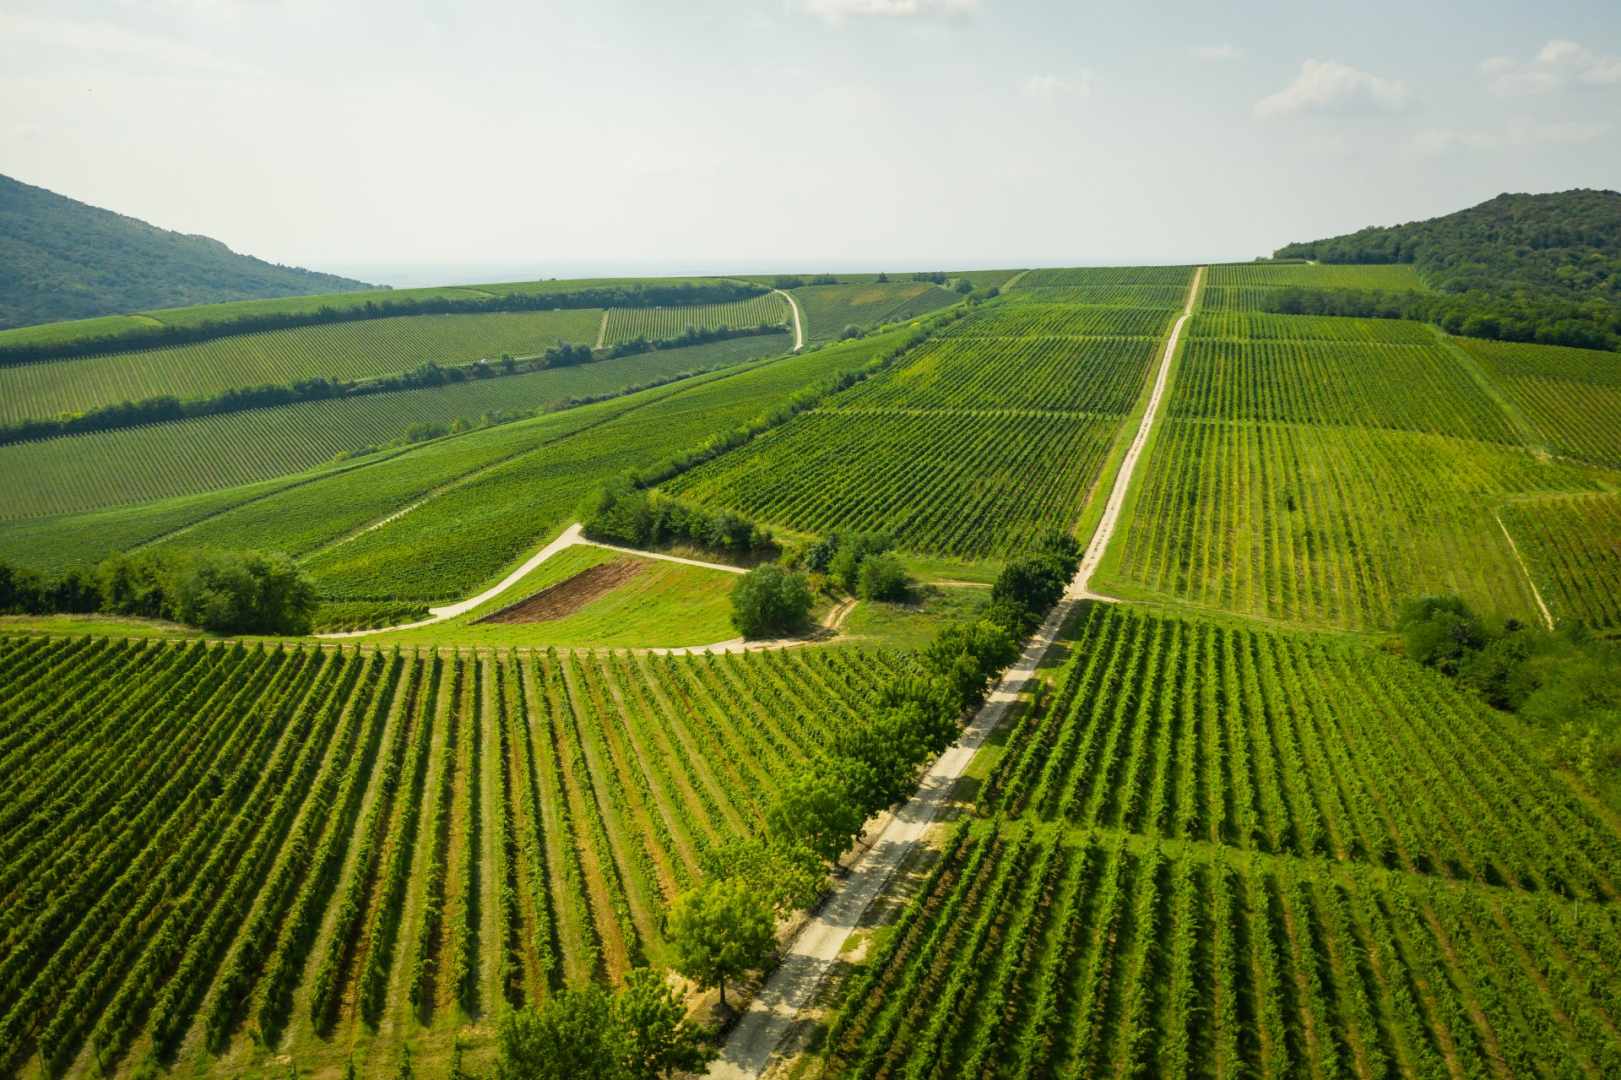 Villány er en vinregion beliggende i det sydlige Ungarn og anses for at være en af landets bedste vinregioner